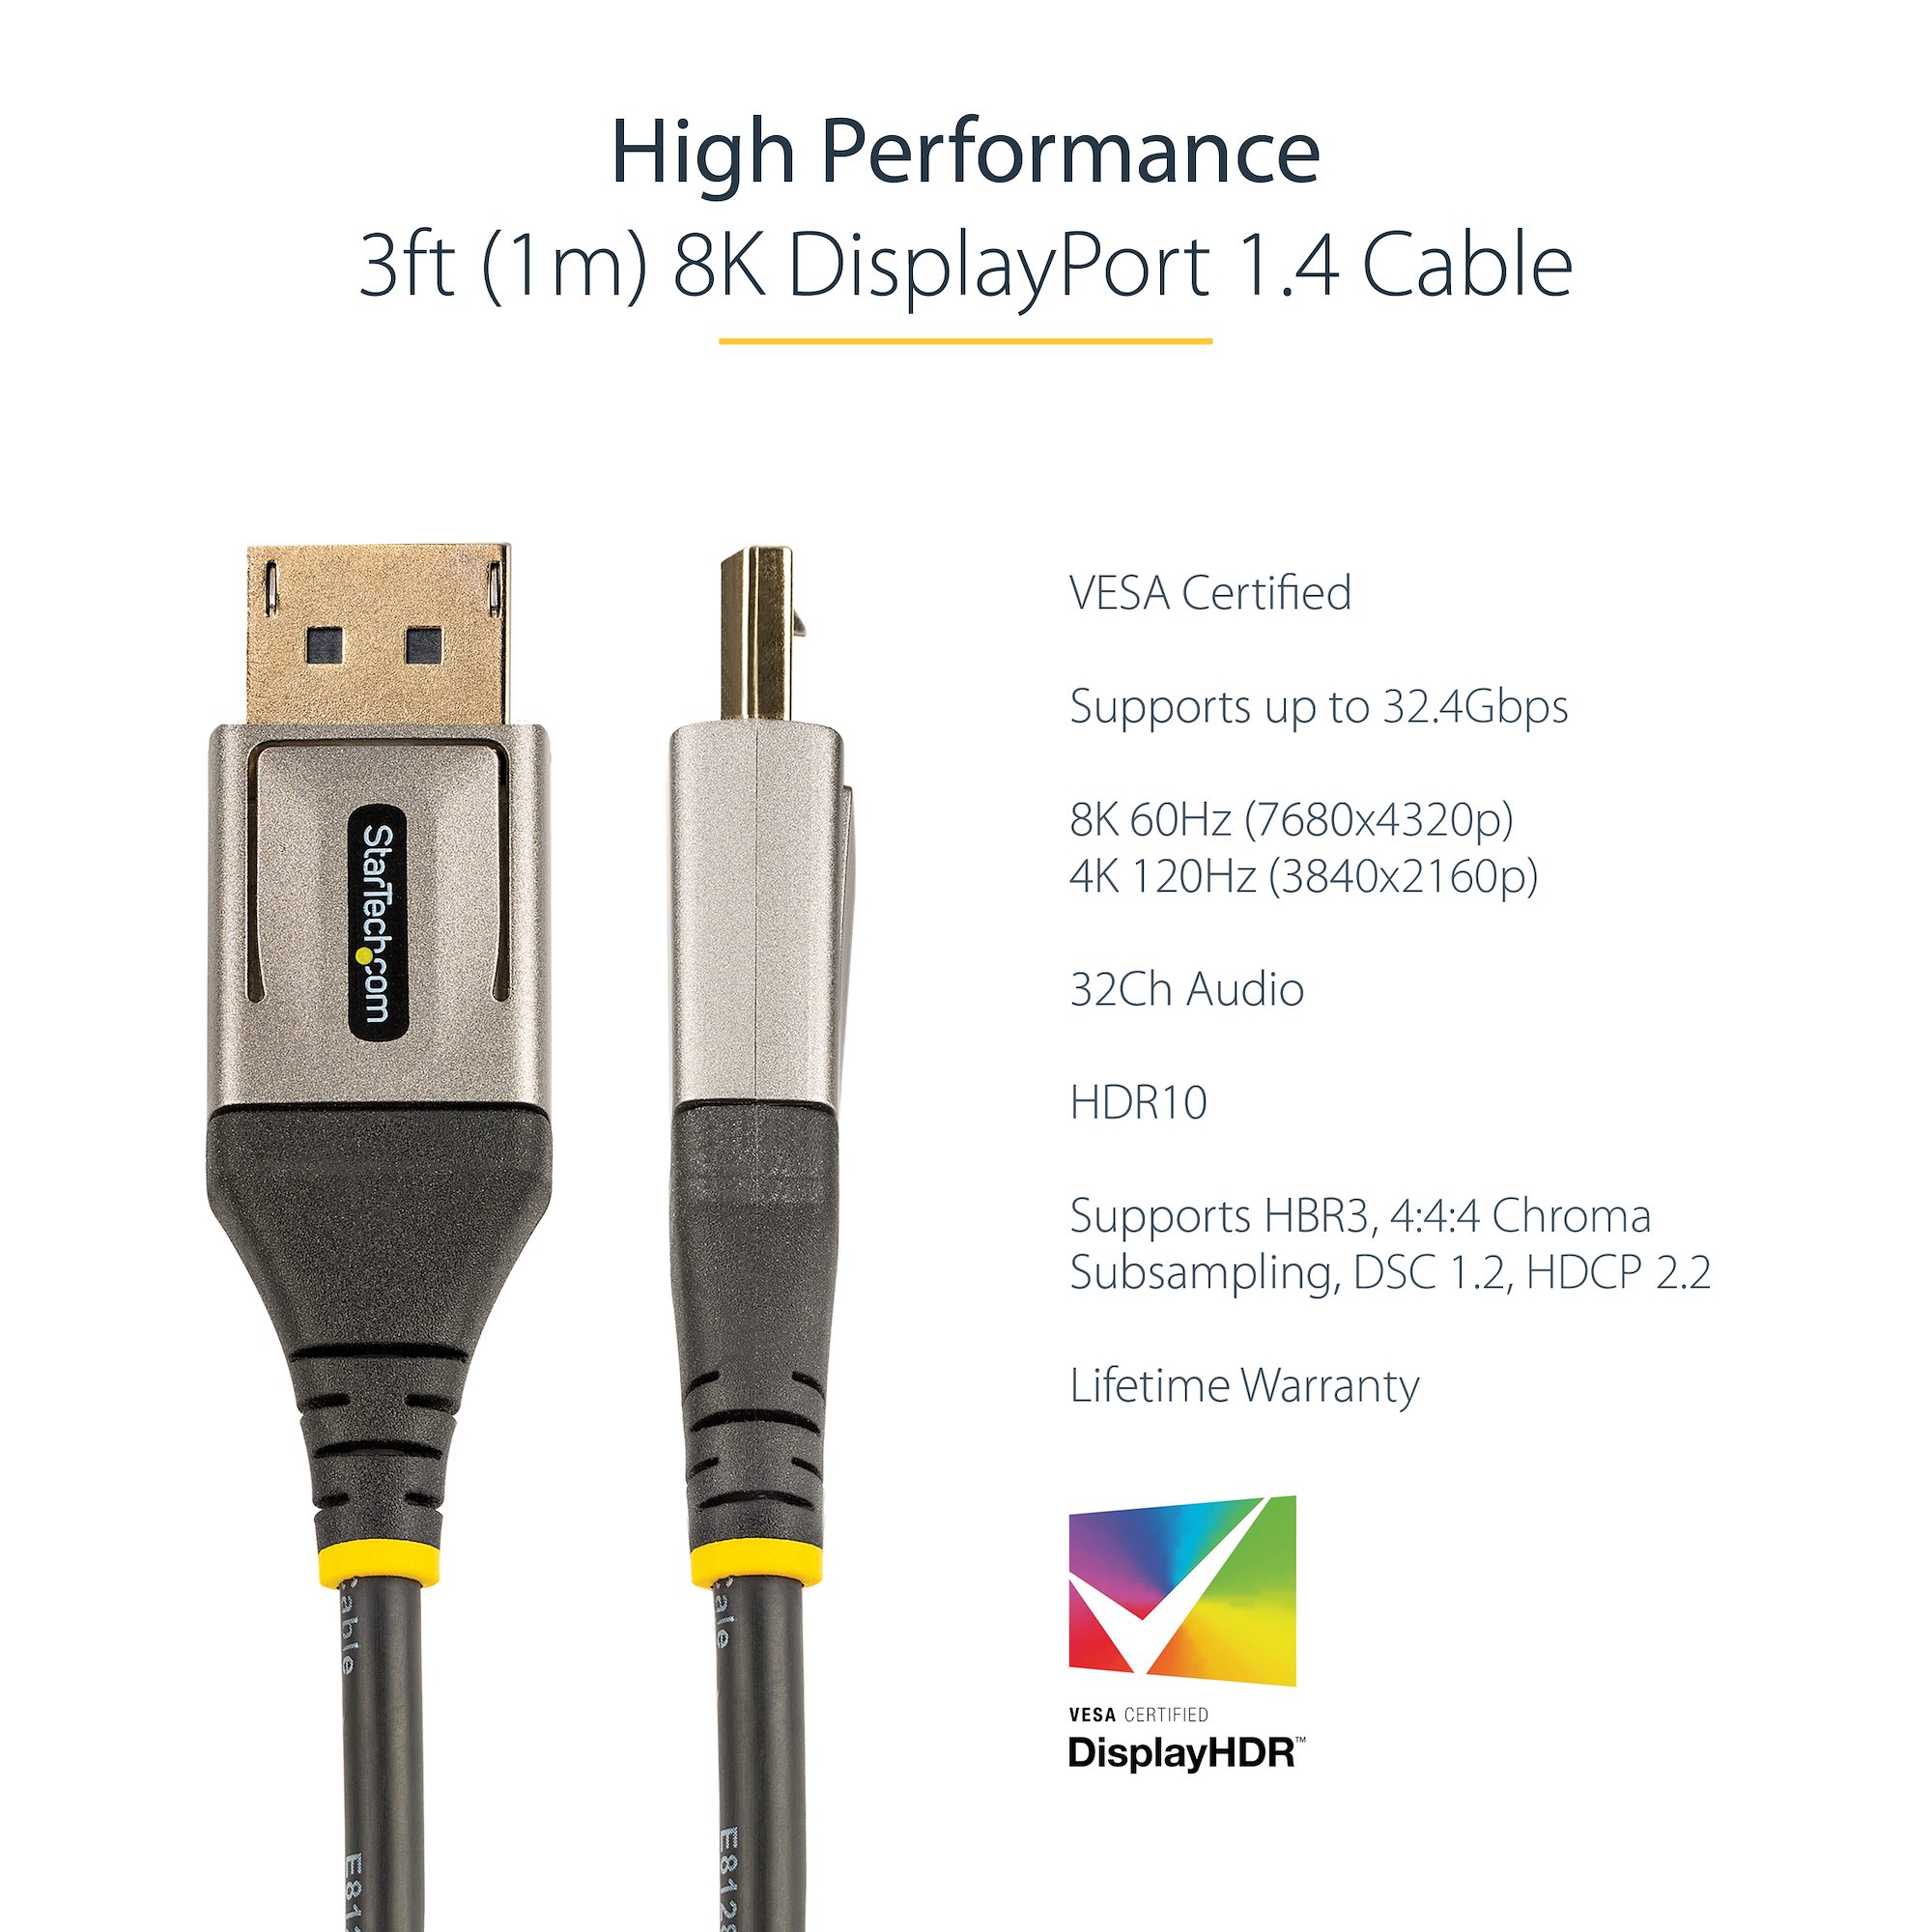 [Certificado VESA] Cable Matters 1,8 m Cable DisplayPort a DisplayPort 8K  1.4 (Cable DisplayPort 1.4, Cable DP 1.4) con resolución de Video 8K@60Hz y